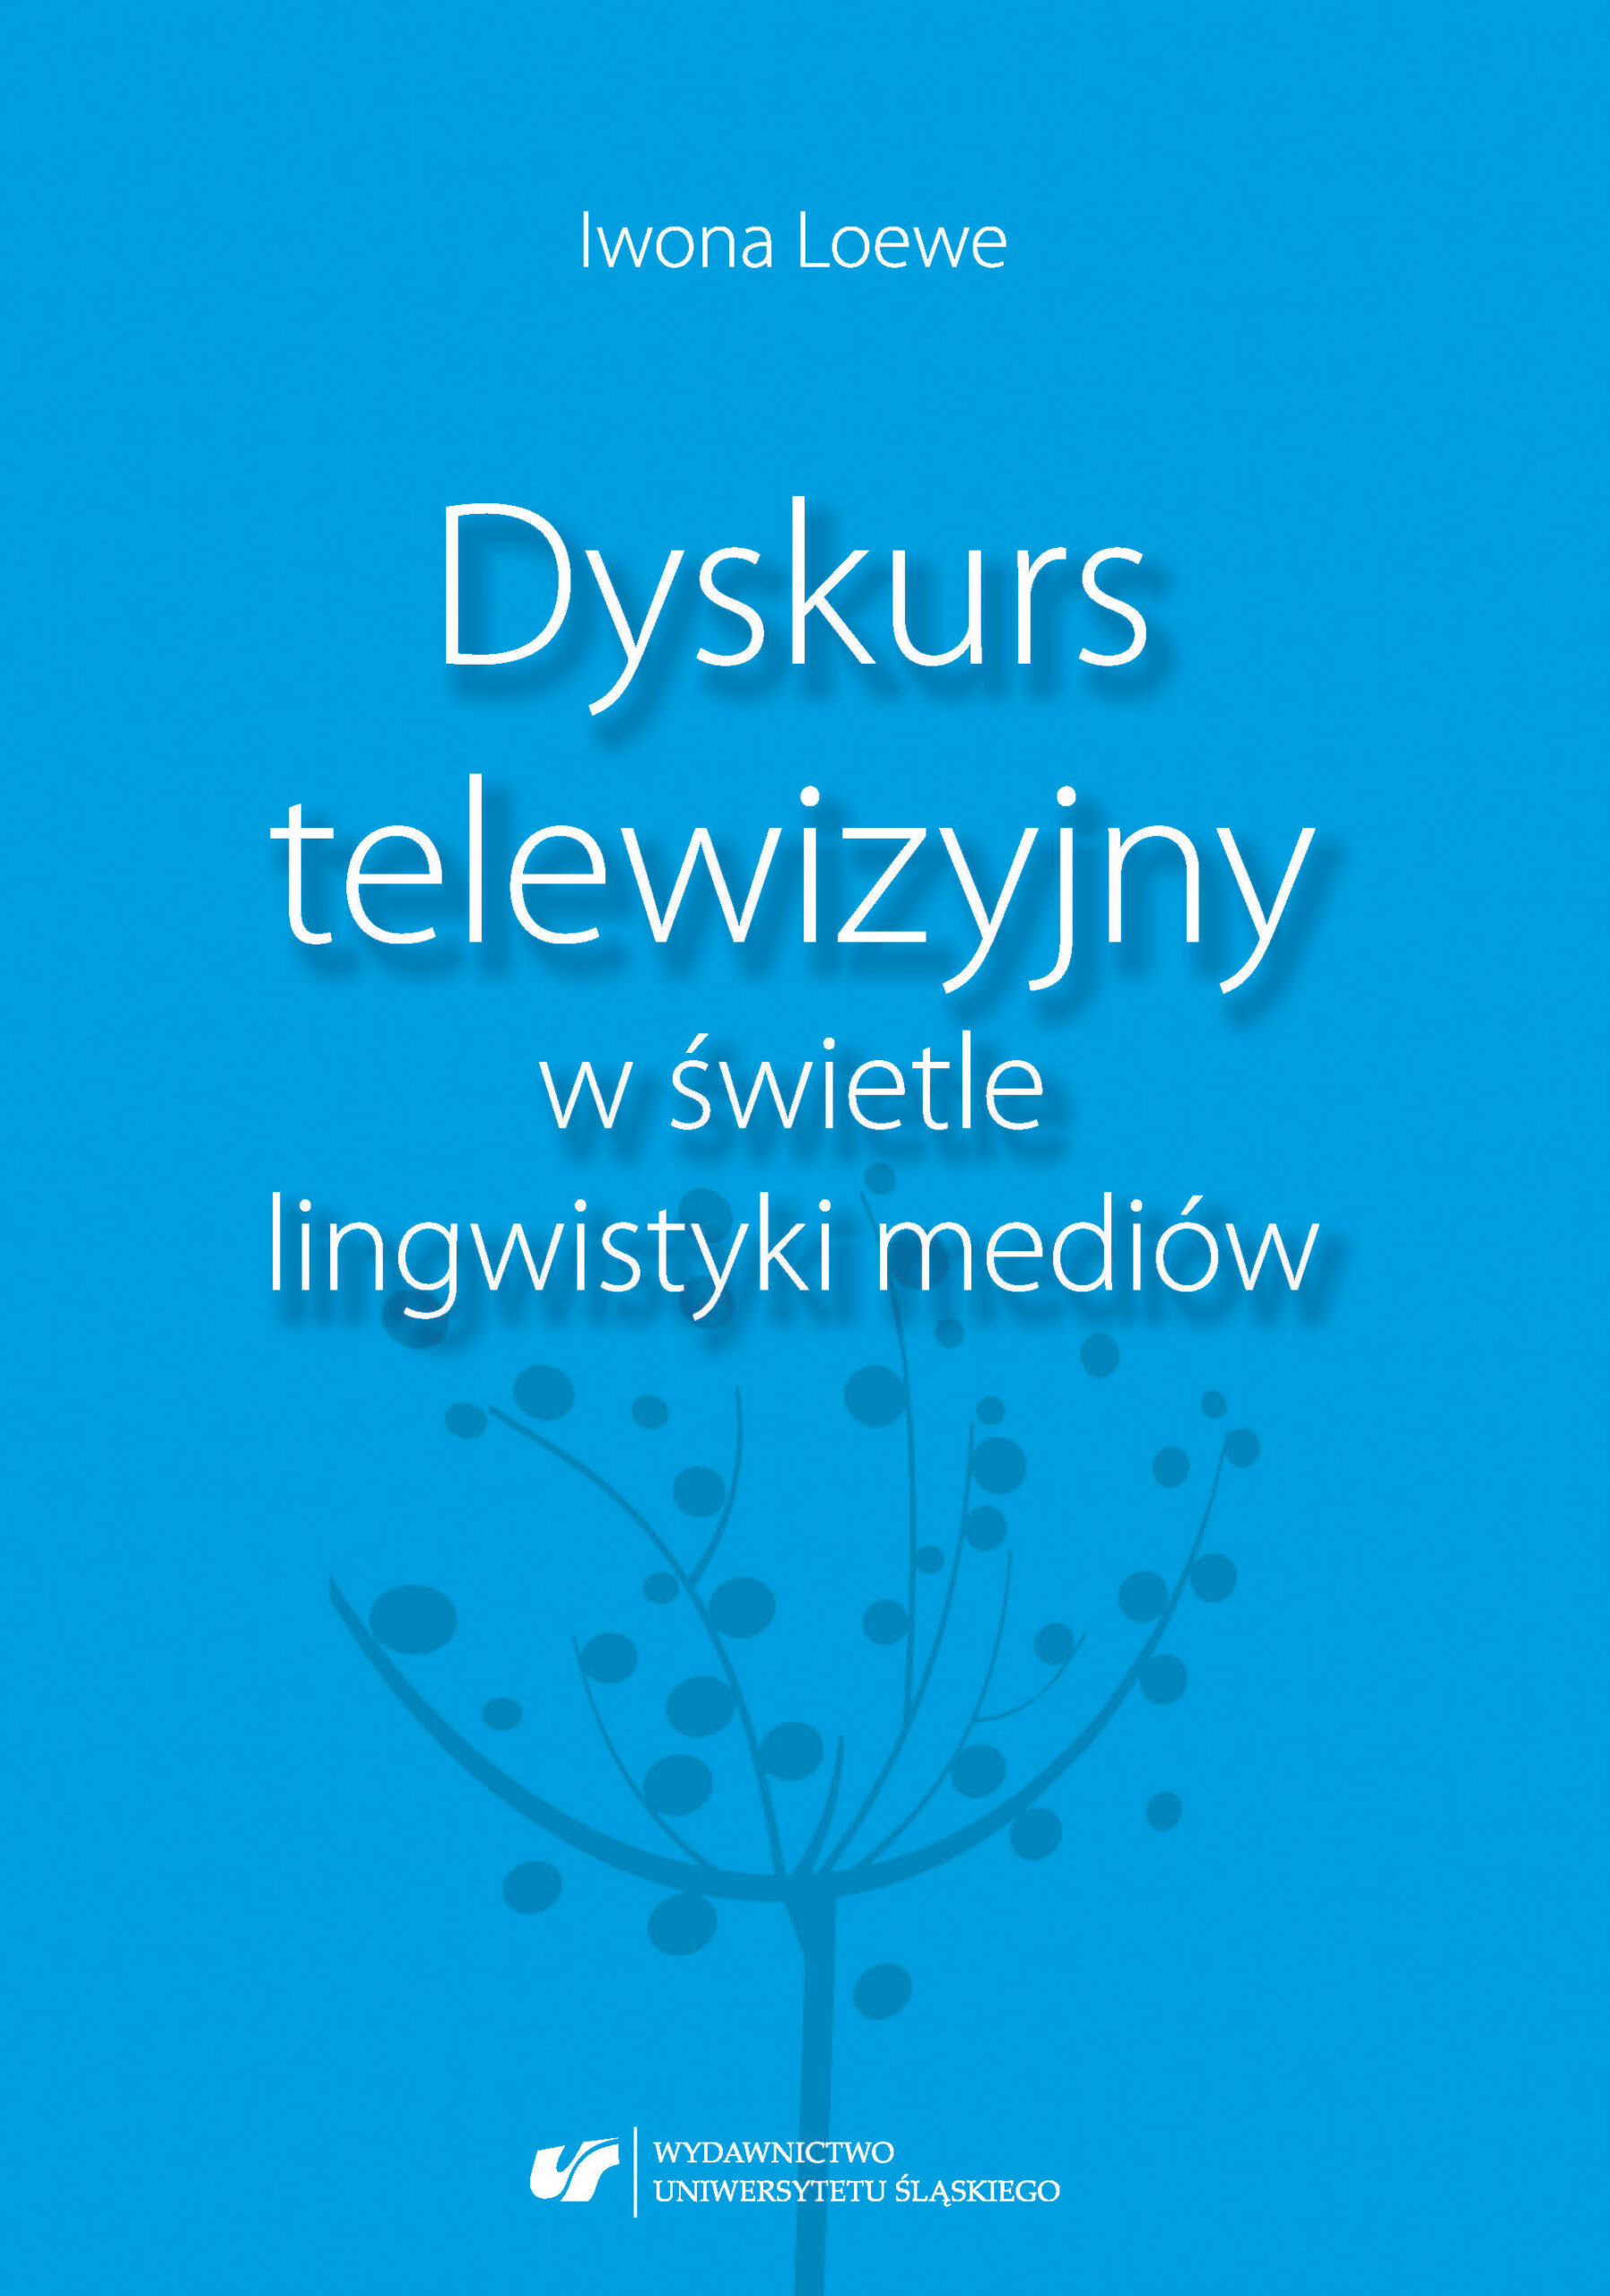 Iwona Loewe Dyskurs telewizyjny w świetle lingwistyki mediów